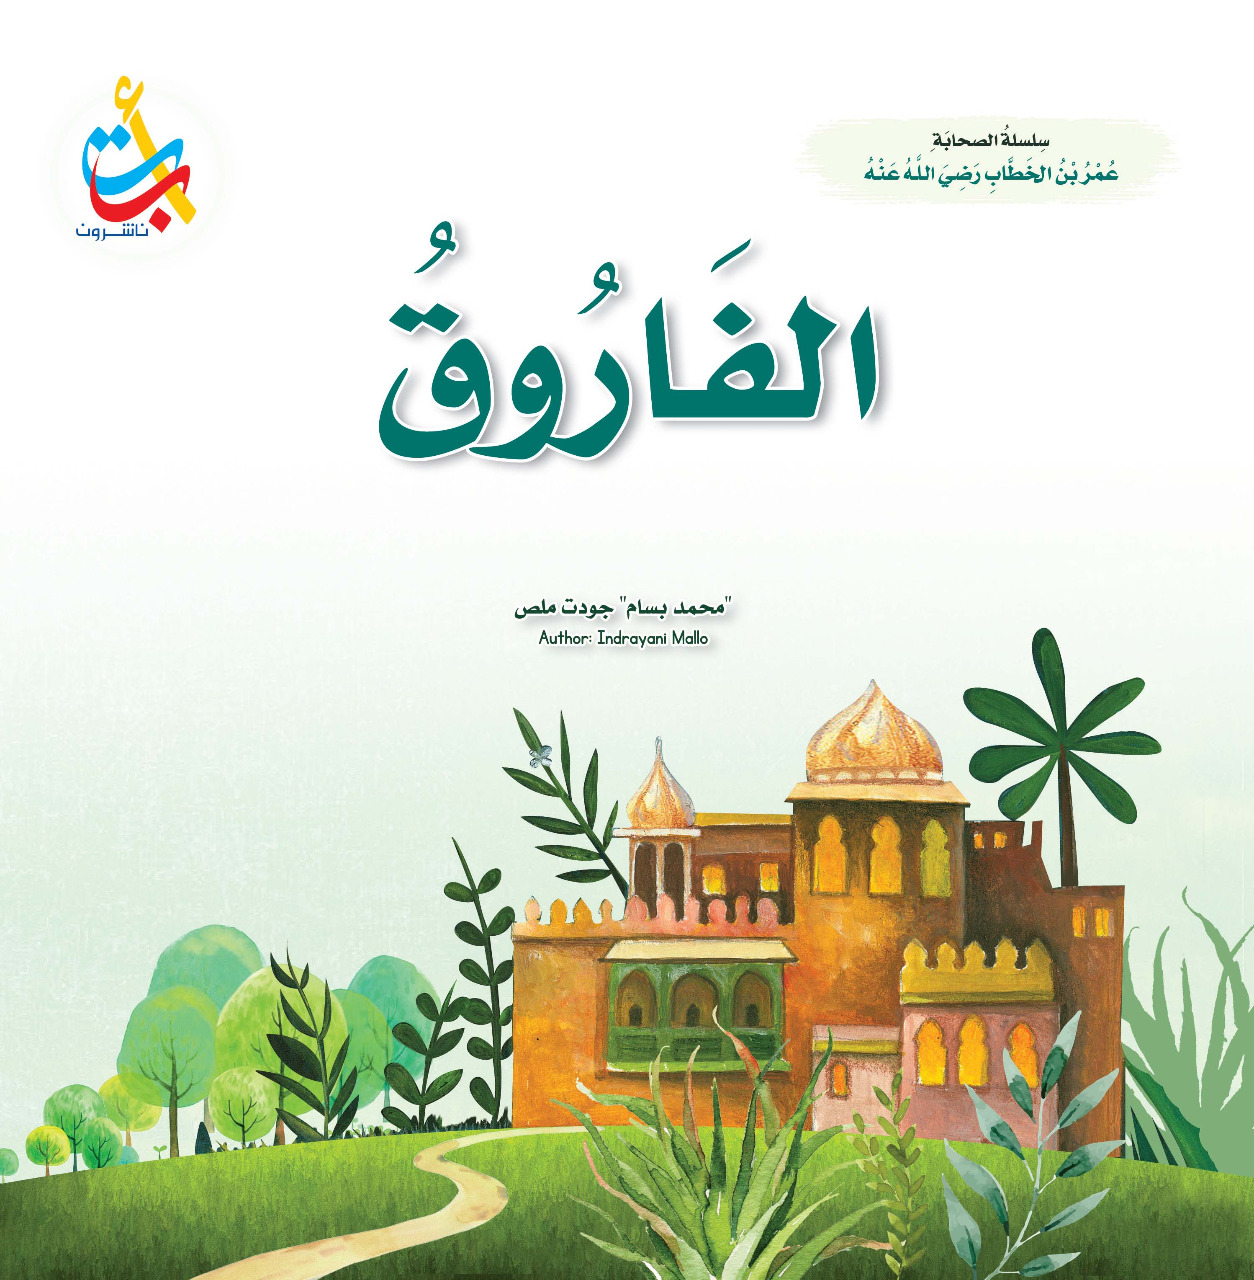 سلسلة الصحابة وسلسلة تحديات ولكن للأطفال اصدارات جديدة في رمضان